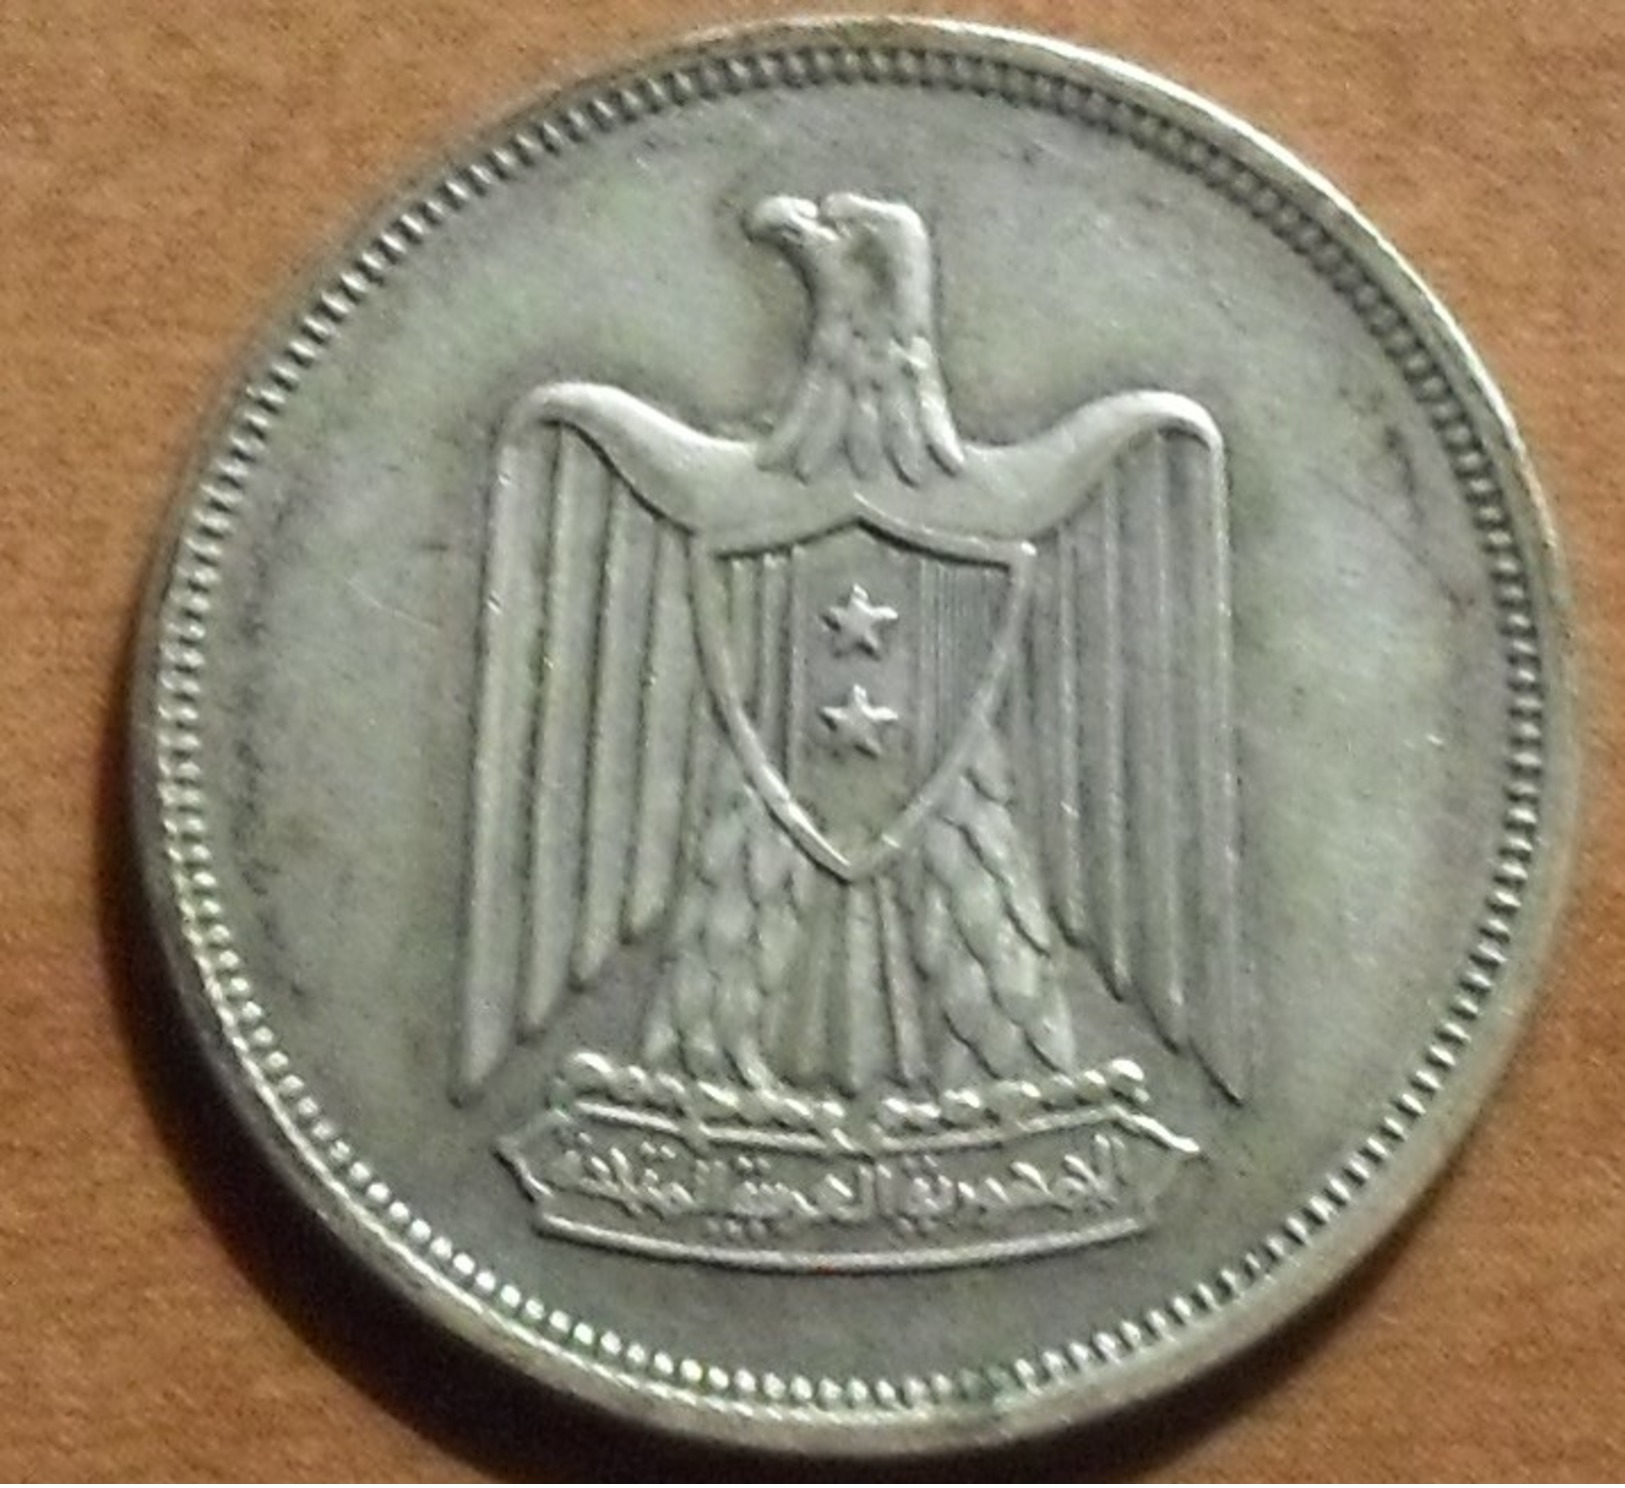 1960 - Egypte - Egypt - 1380 - 10 PIASTRES, Argent, Silver - KM 398 - Egypte